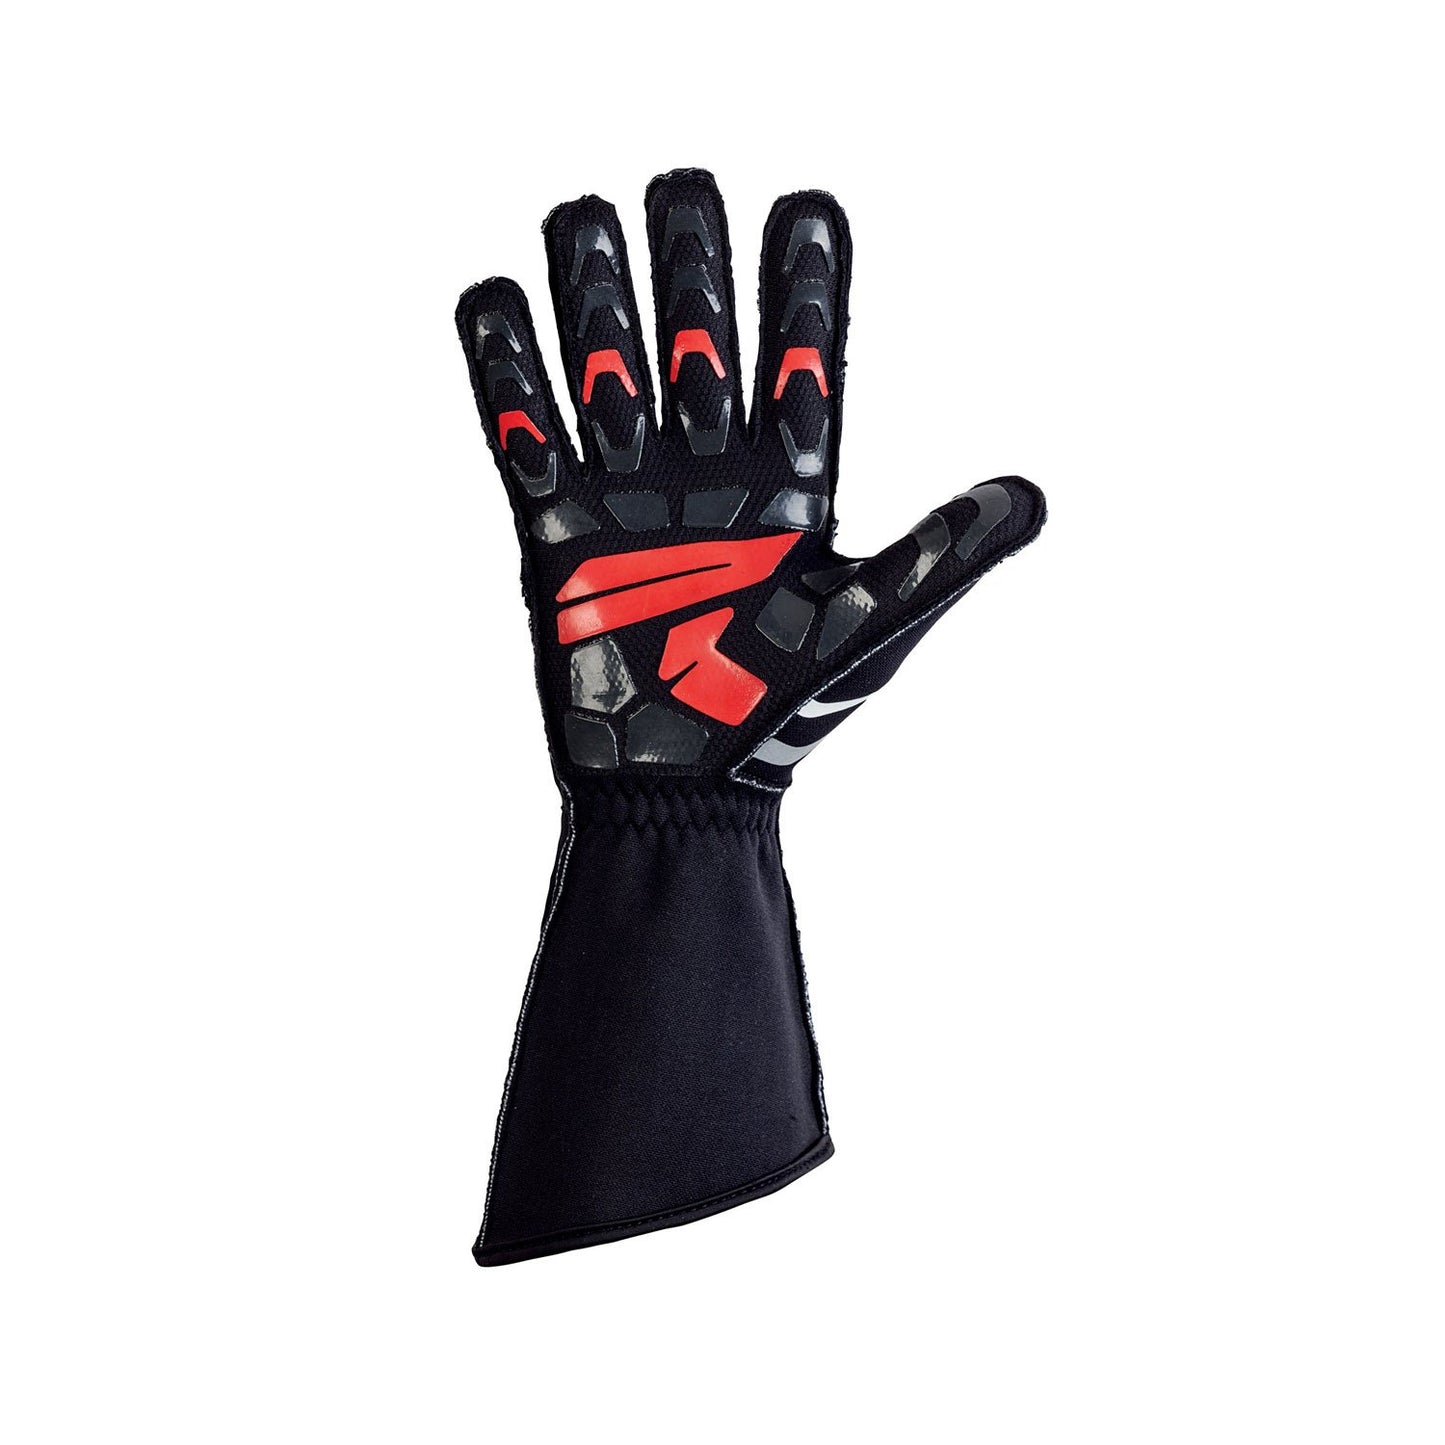 OMP ARP Rainproof Karting Gloves Black